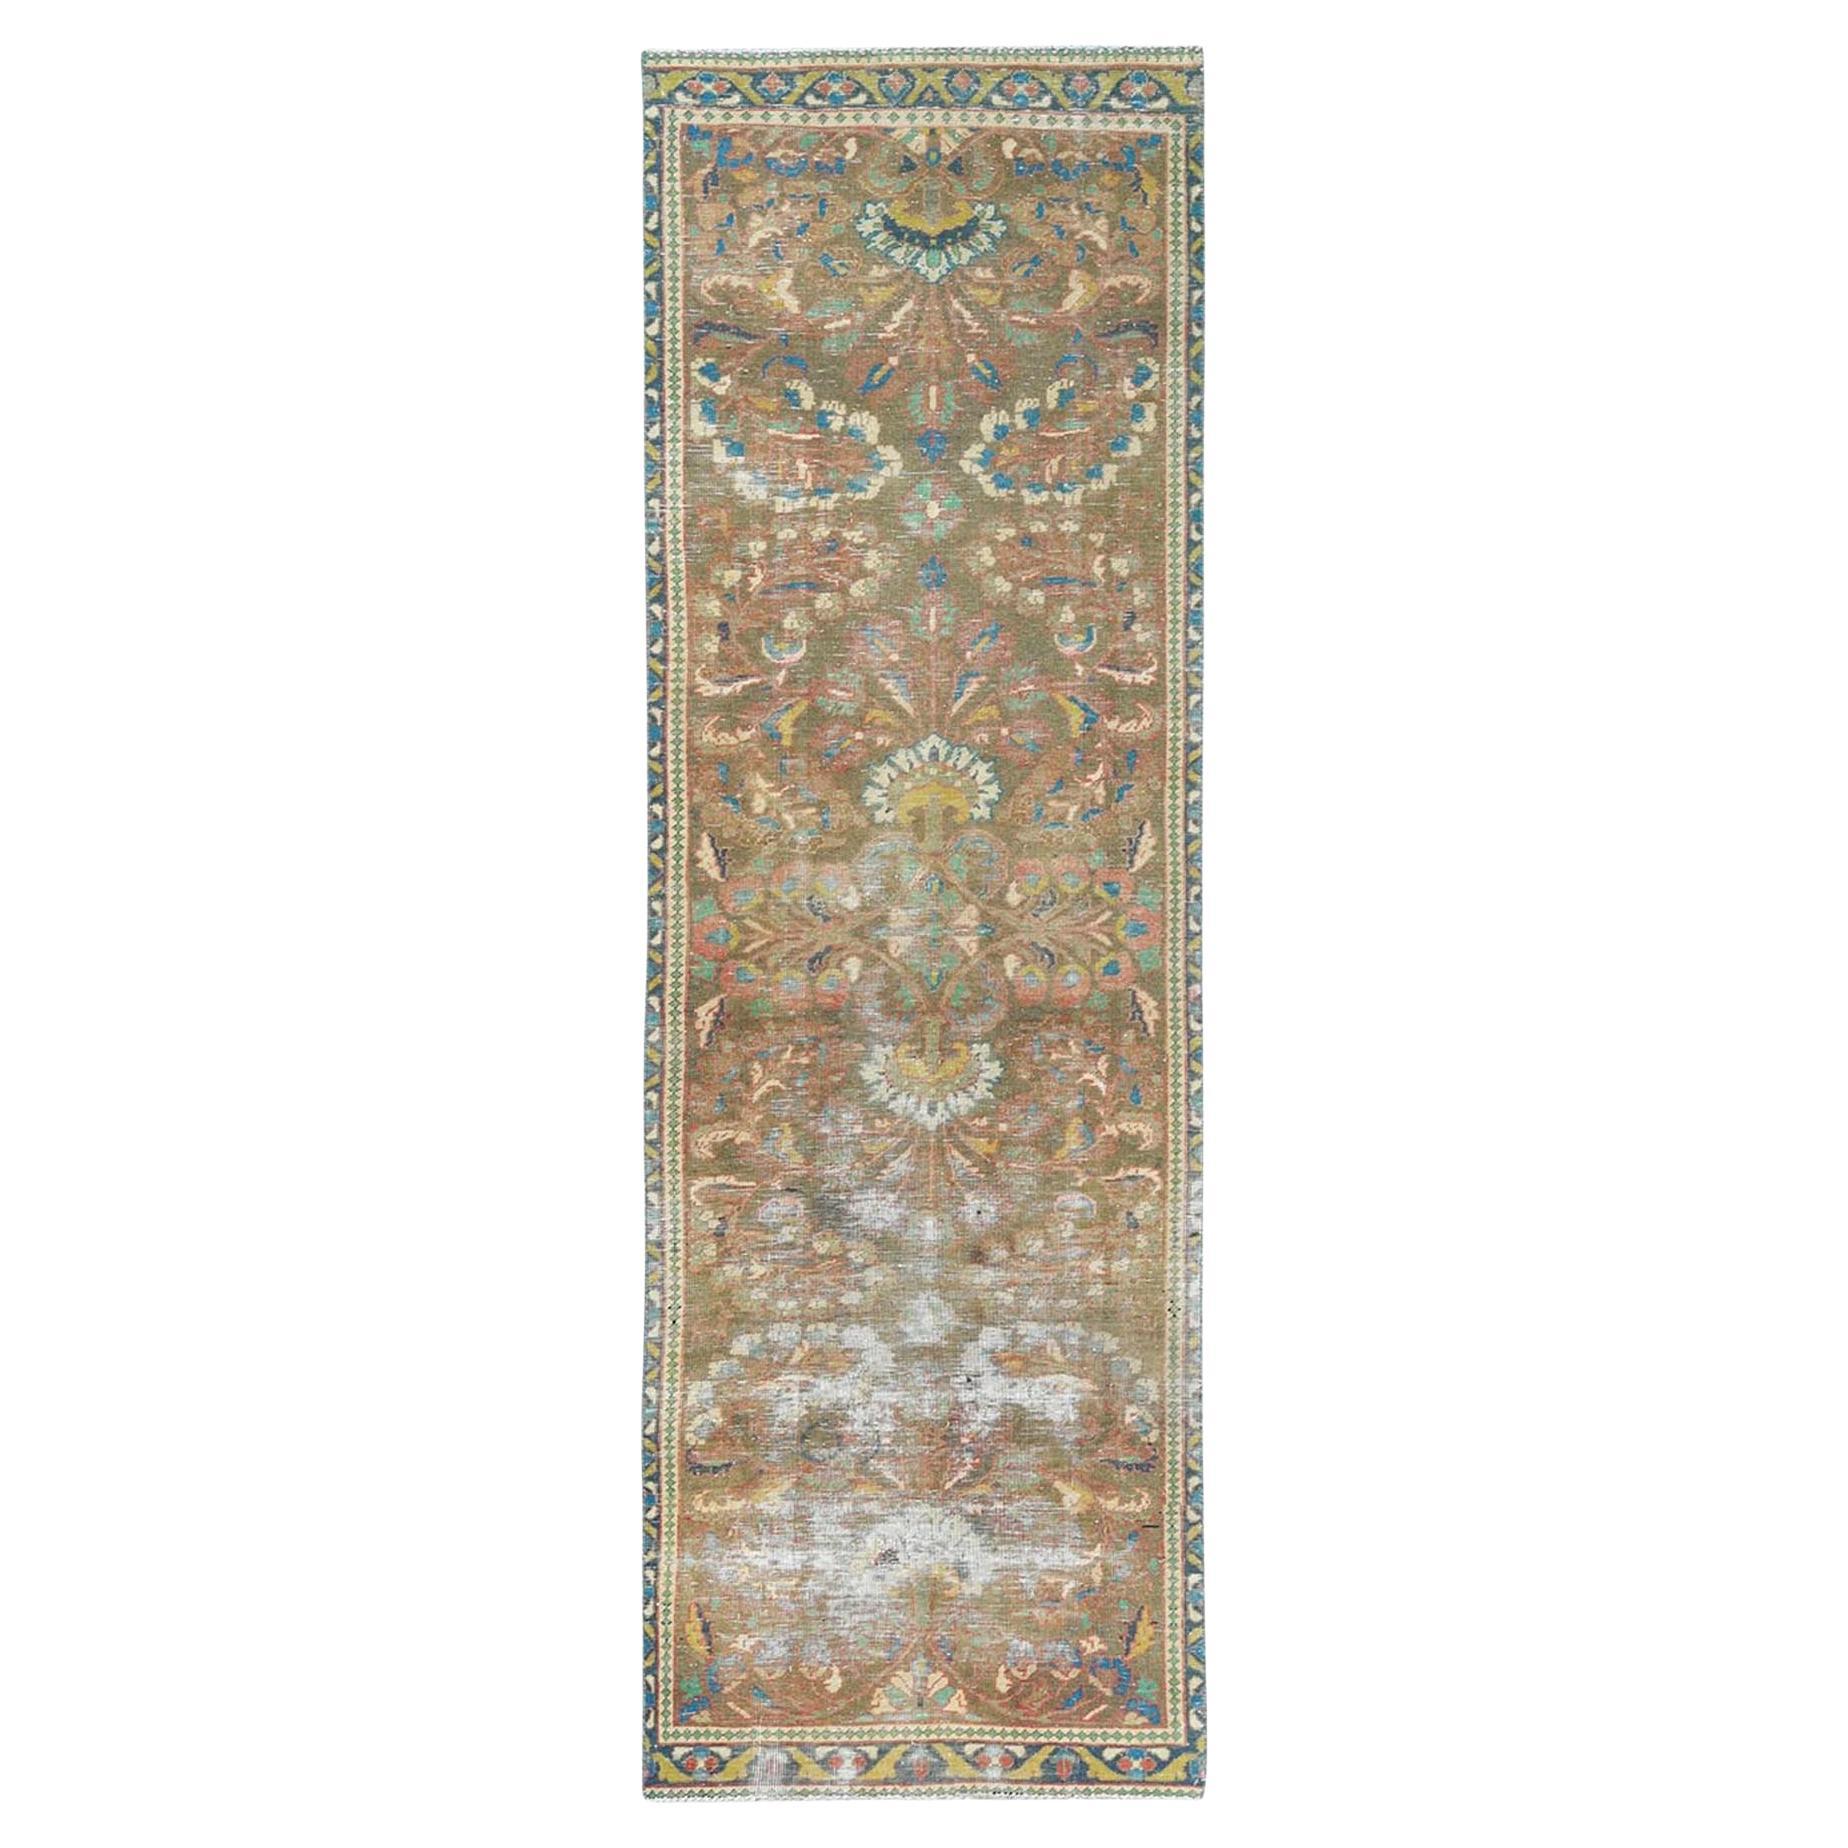 Handgeknüpfter persischer Lilahan-Teppich aus reiner Wolle in Taupe, geblümt, böhmisch